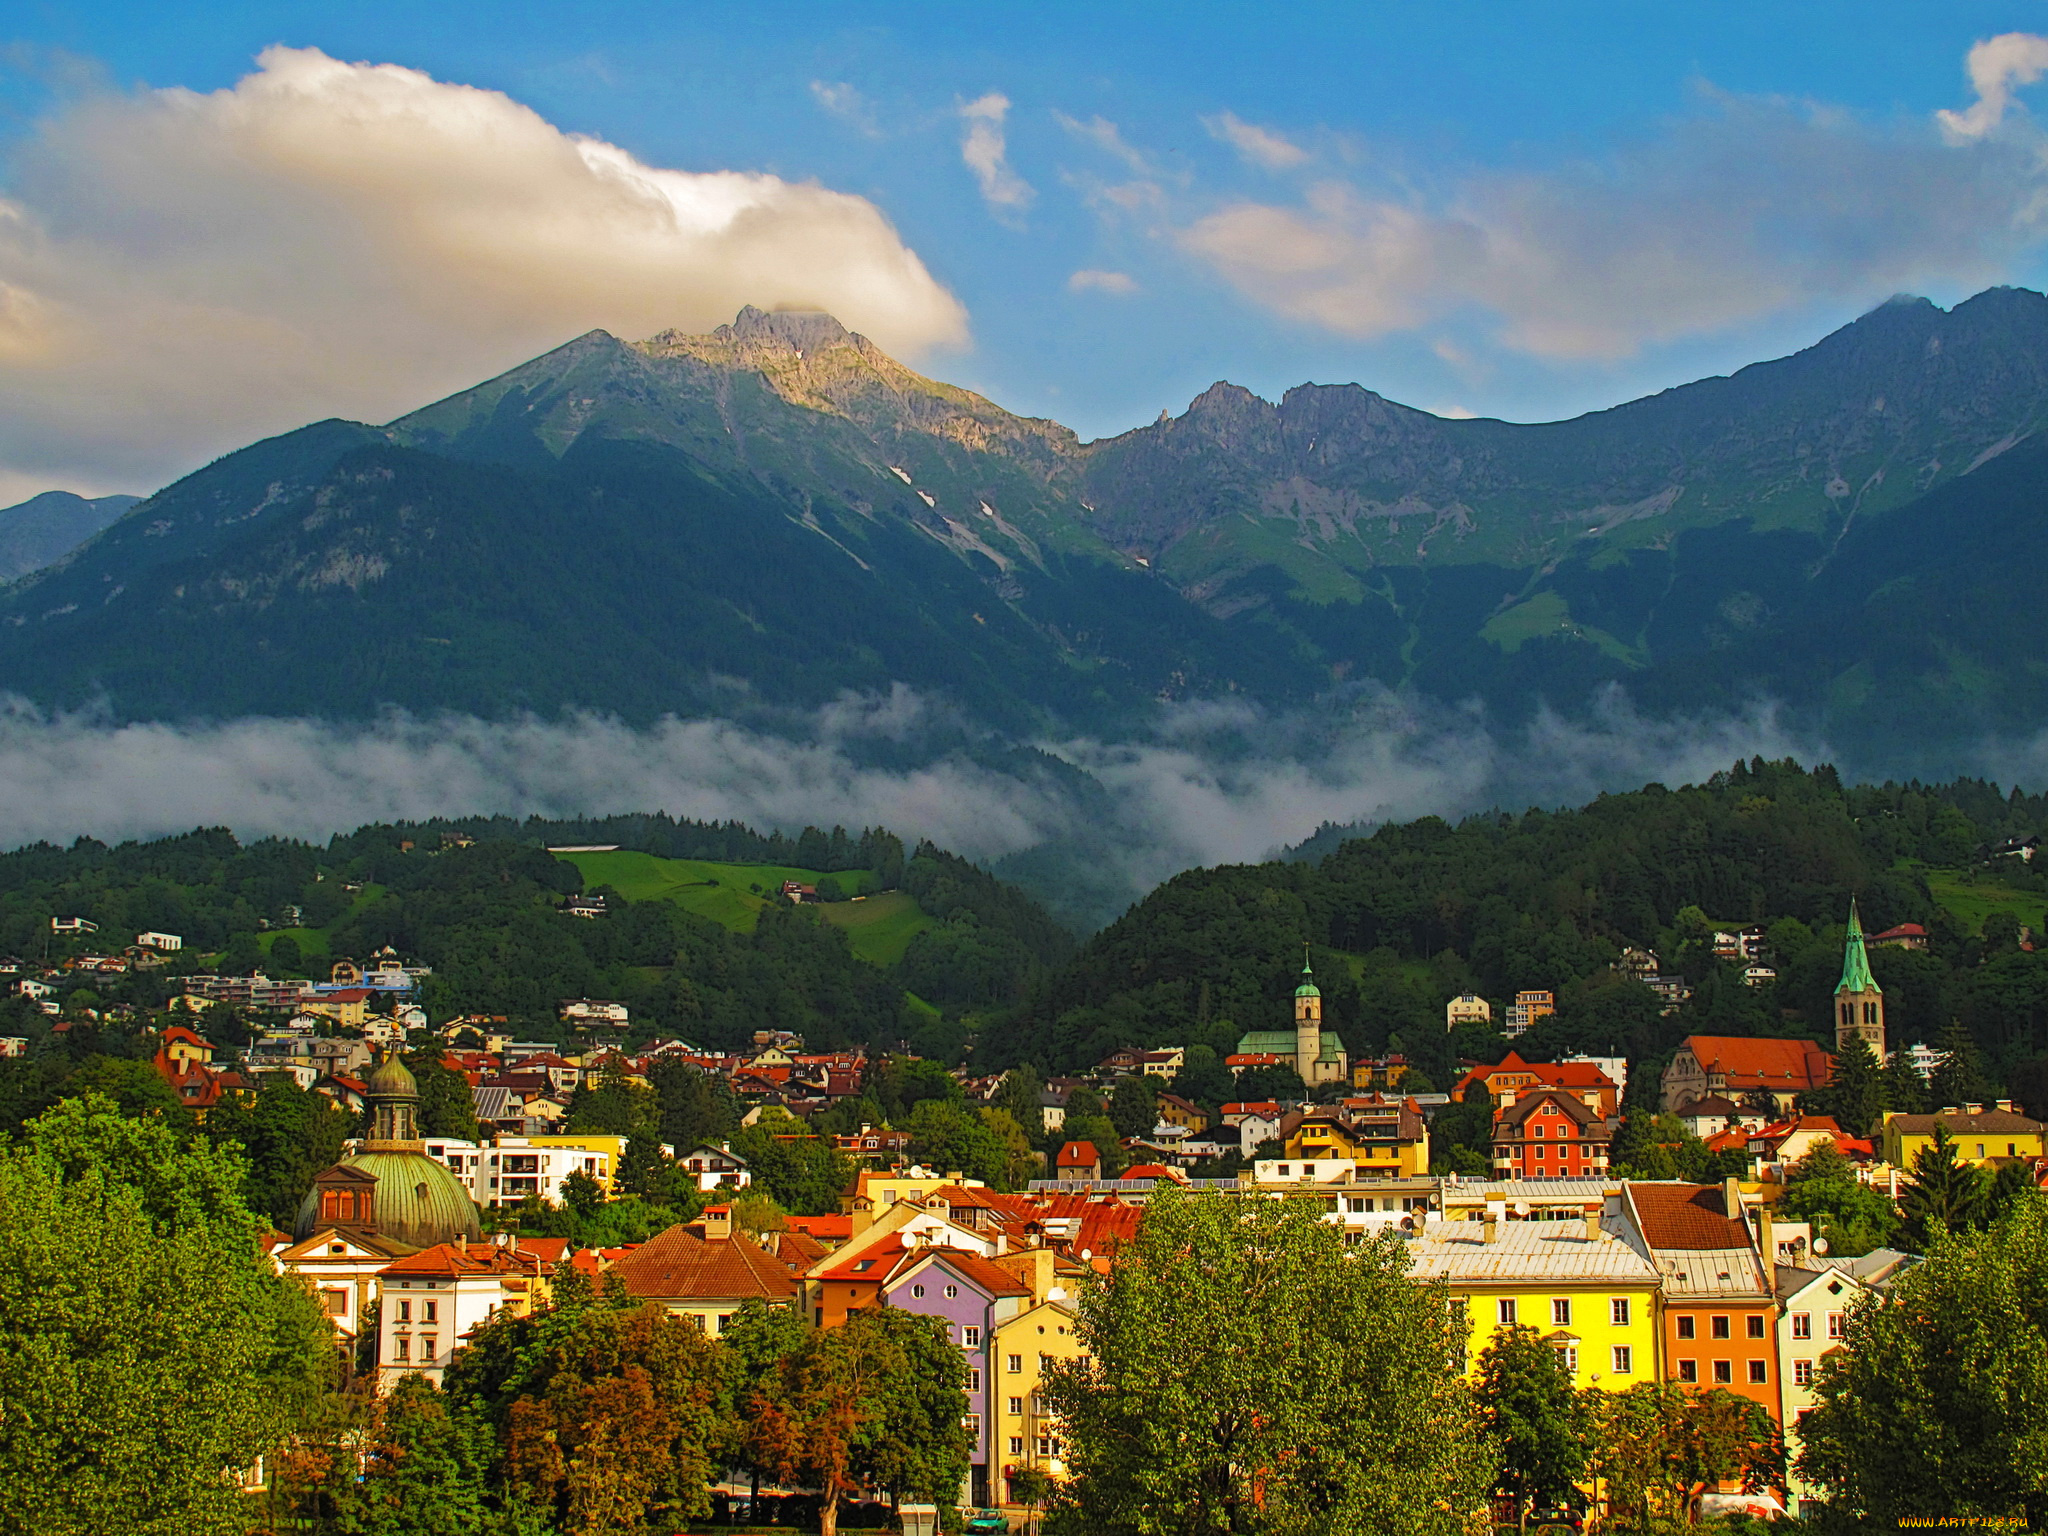 инсбрук, австрия, города, -, панорамы, горы, панорама, дома, инсбрук, австрия